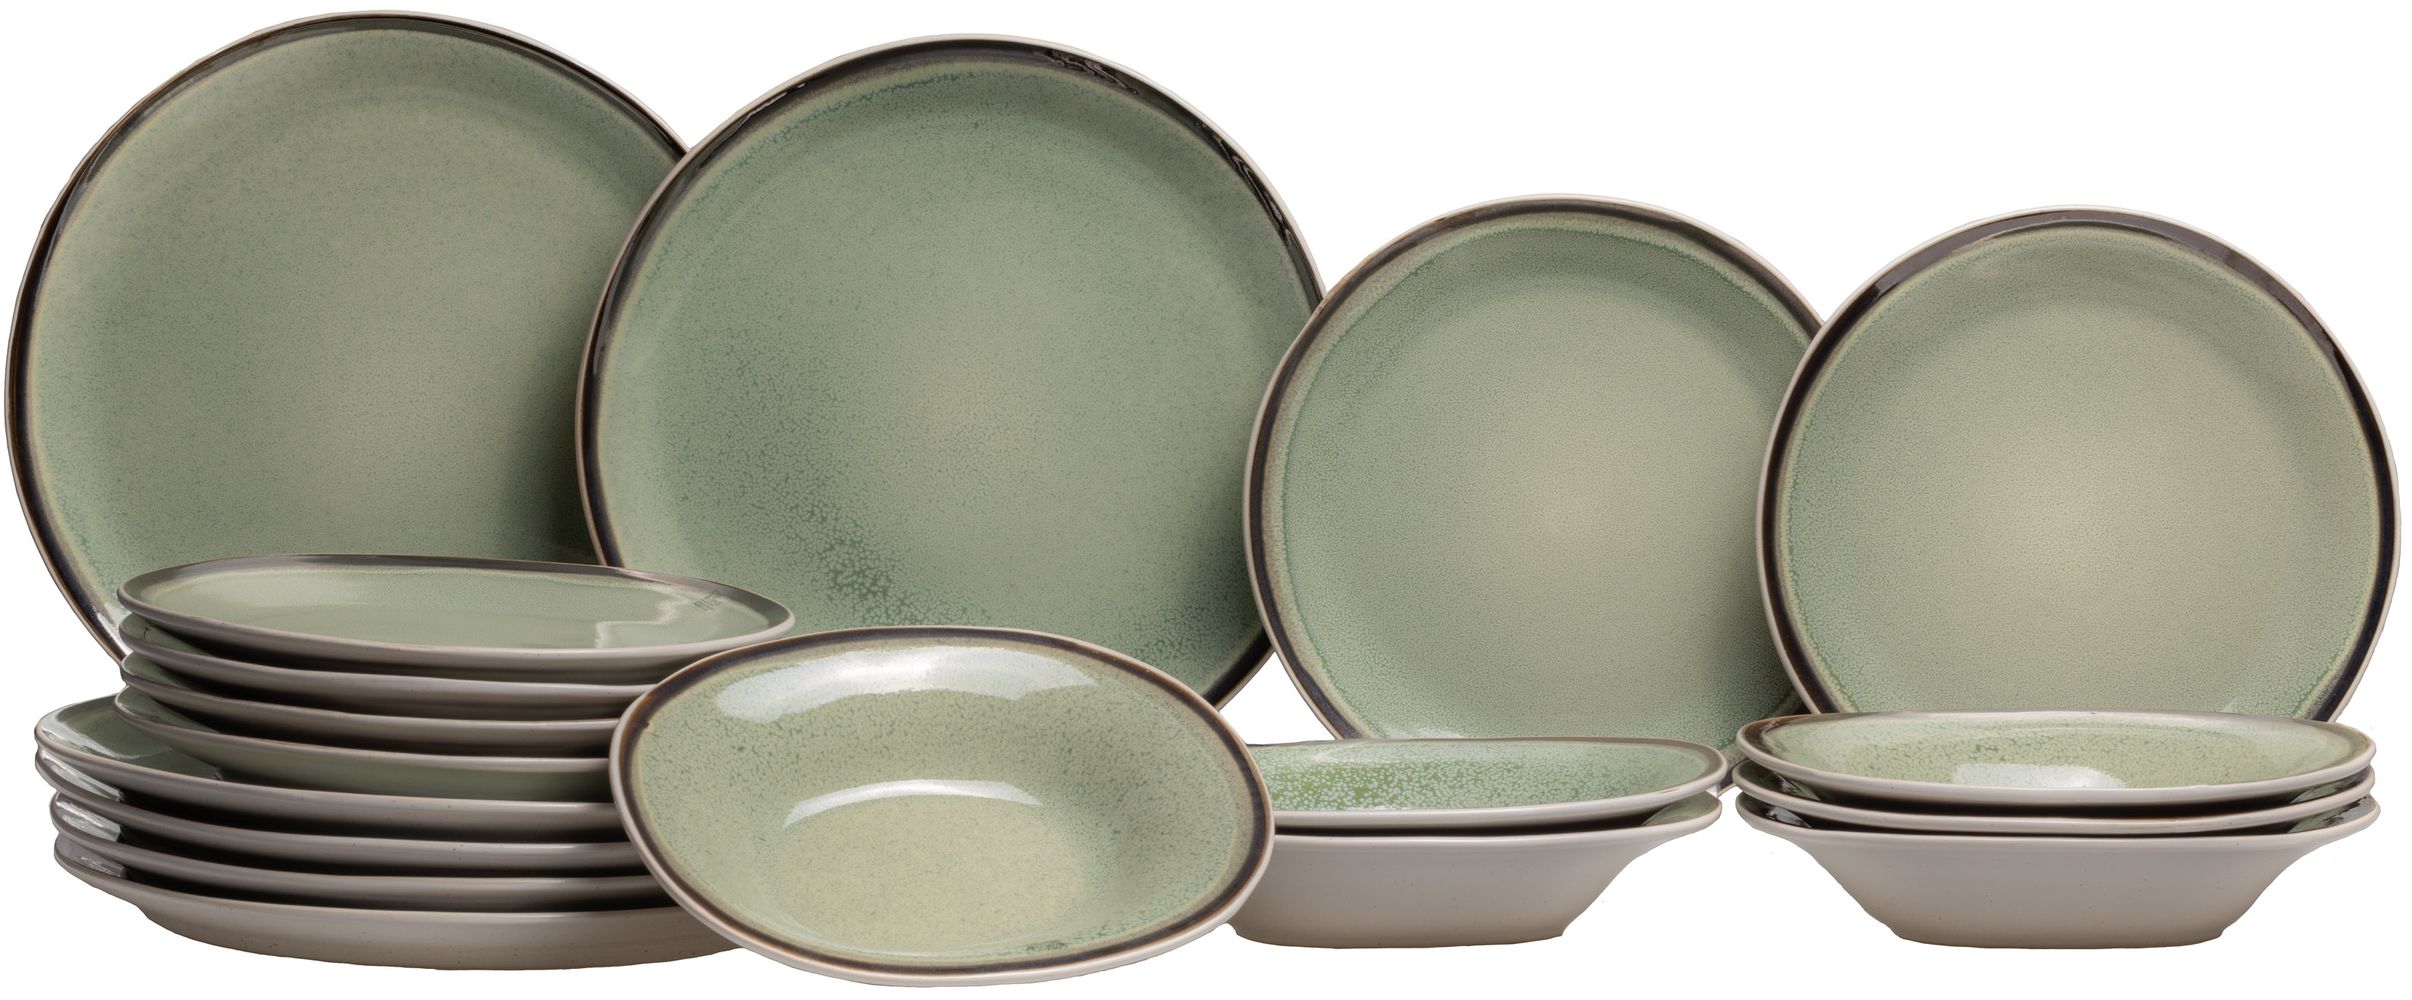 Duiker Overleven hemel Cosy & Trendy 18-Piece Dinnerware Set Fez Green | Buy now at Cookinglife